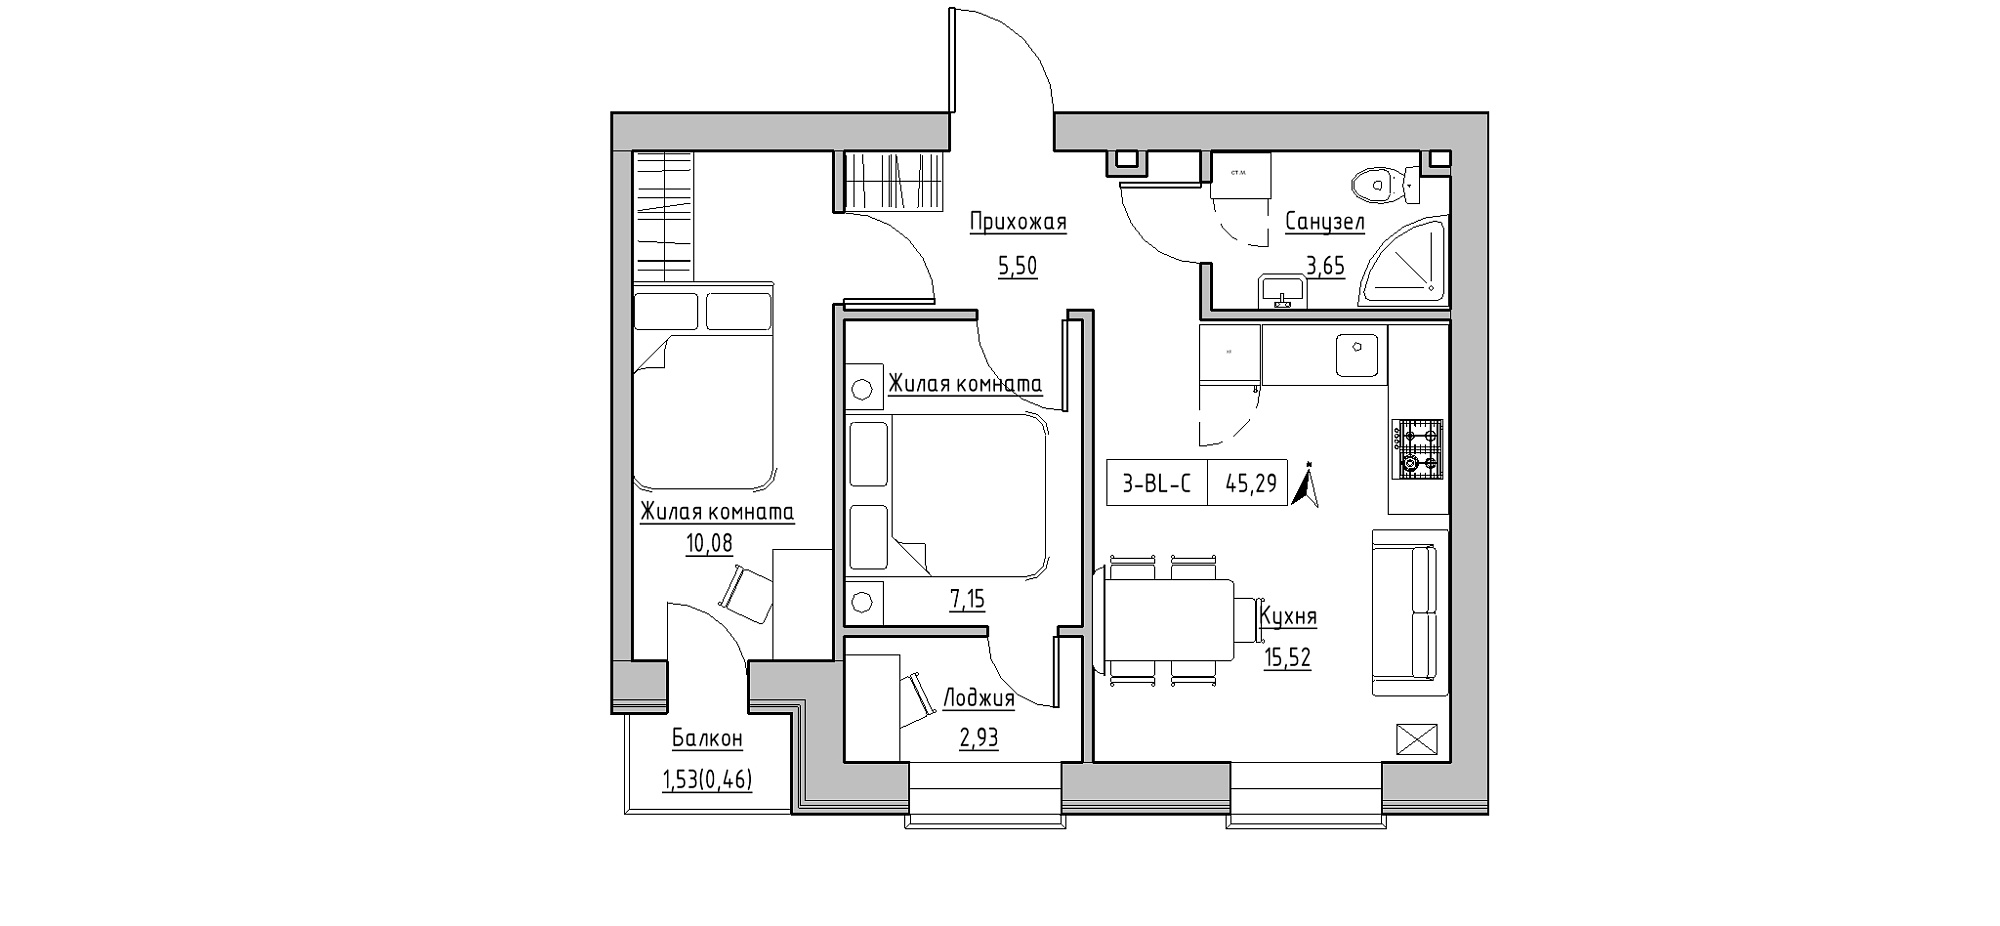 Планировка 2-к квартира площей 45.29м2, KS-020-04/0008.